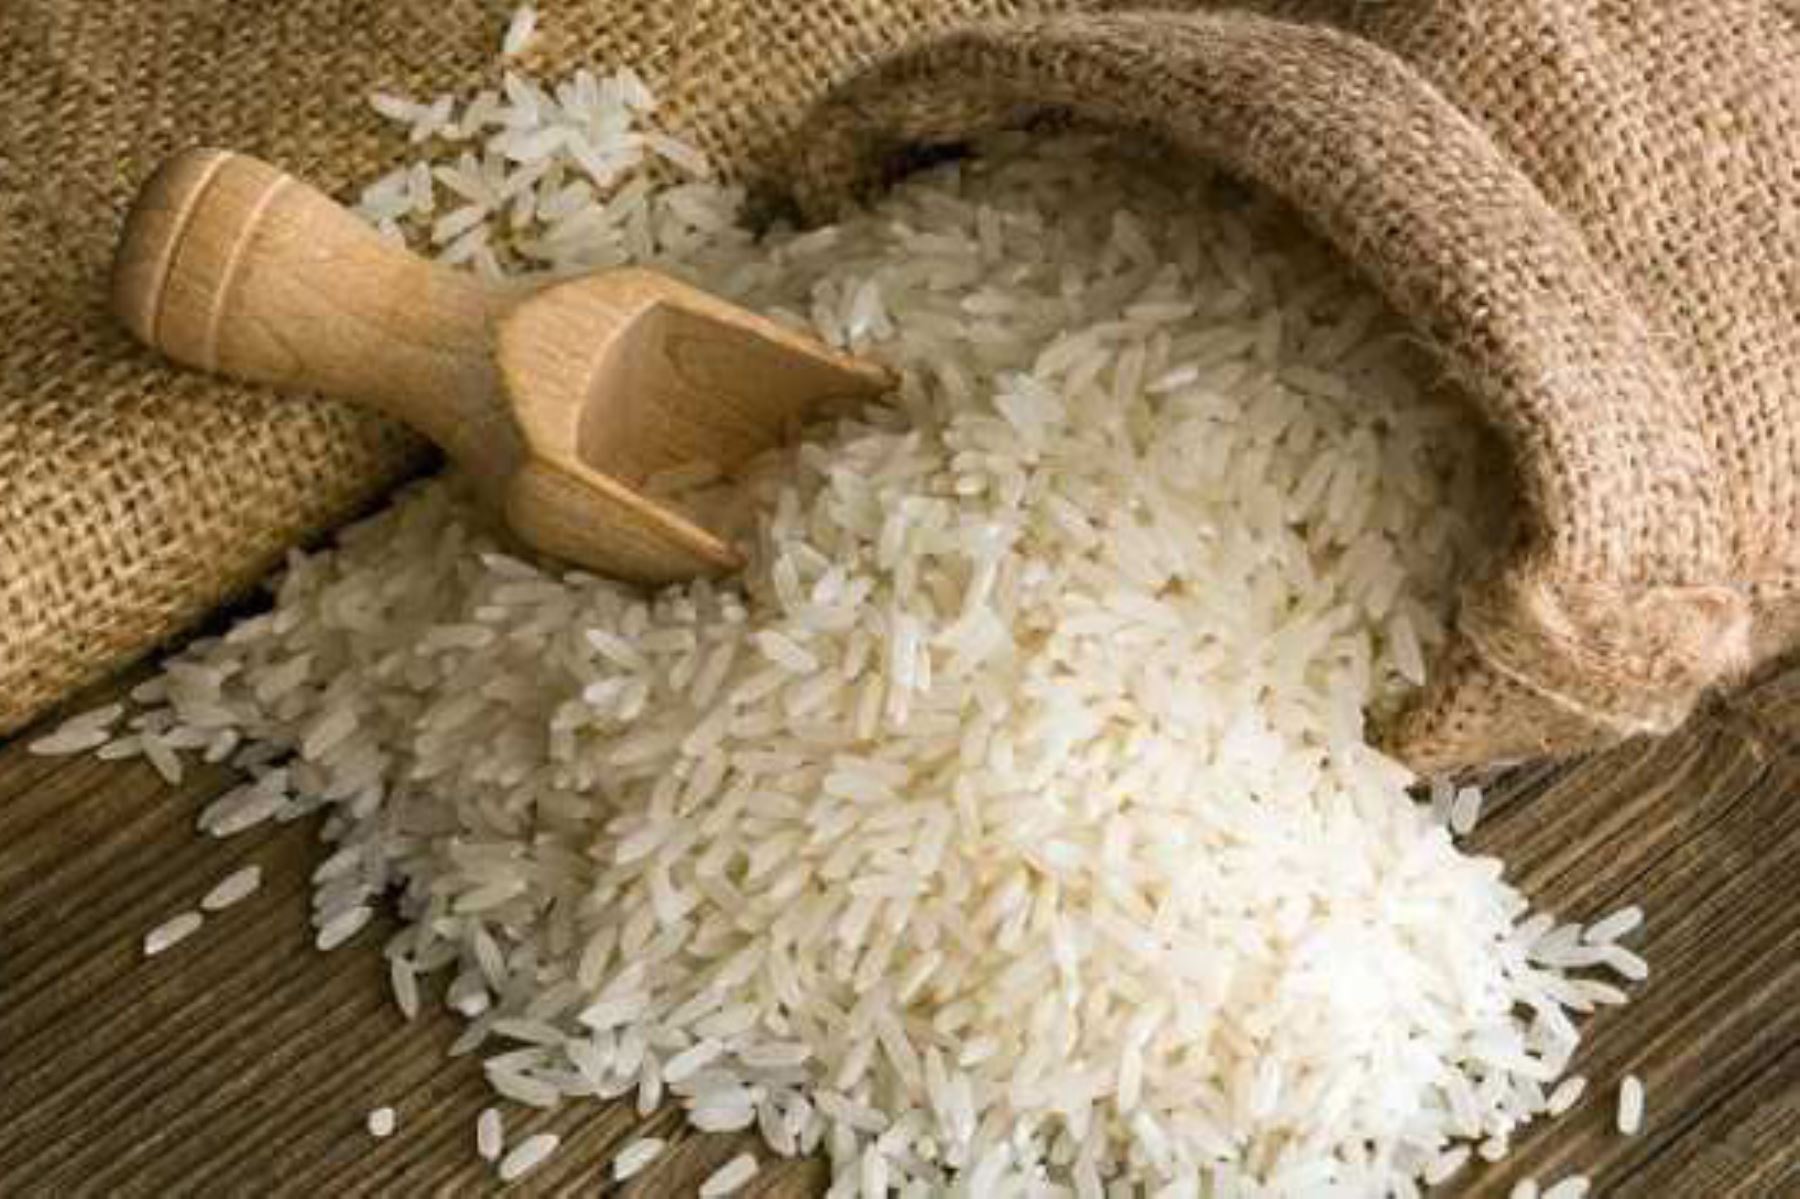 La fórmula de arroz fortificado elaborado por especialistas del Centro Nacional de Alimentación y Nutrición (Cenan) del Instituto Nacional de Salud (INS) contiene diez micronutrientes que ayudarán a la reducción de los índices de anemia en el país.